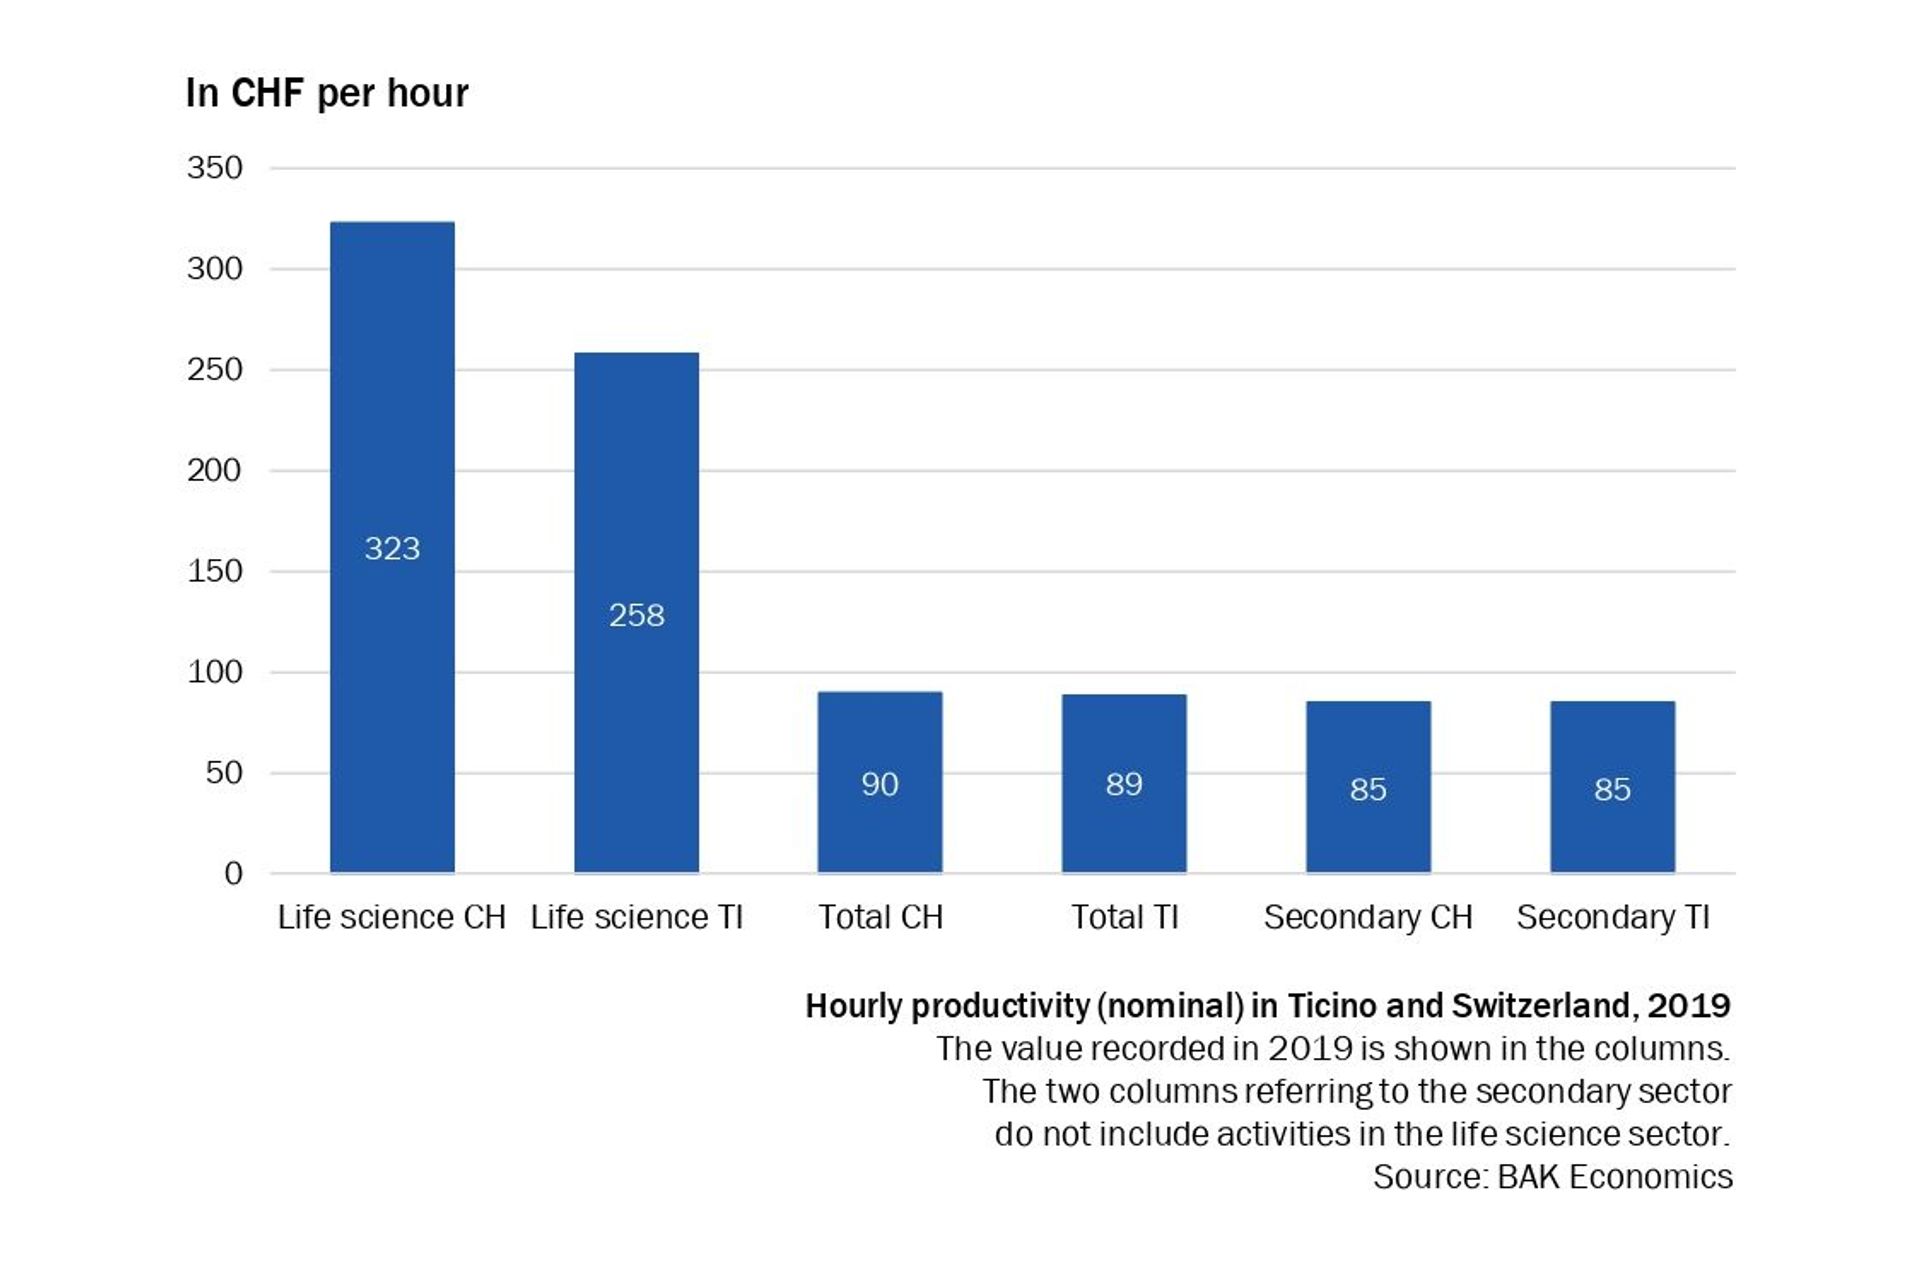 La produttività oraria nel settore Life Science in Ticino nello studio di BAK Economics